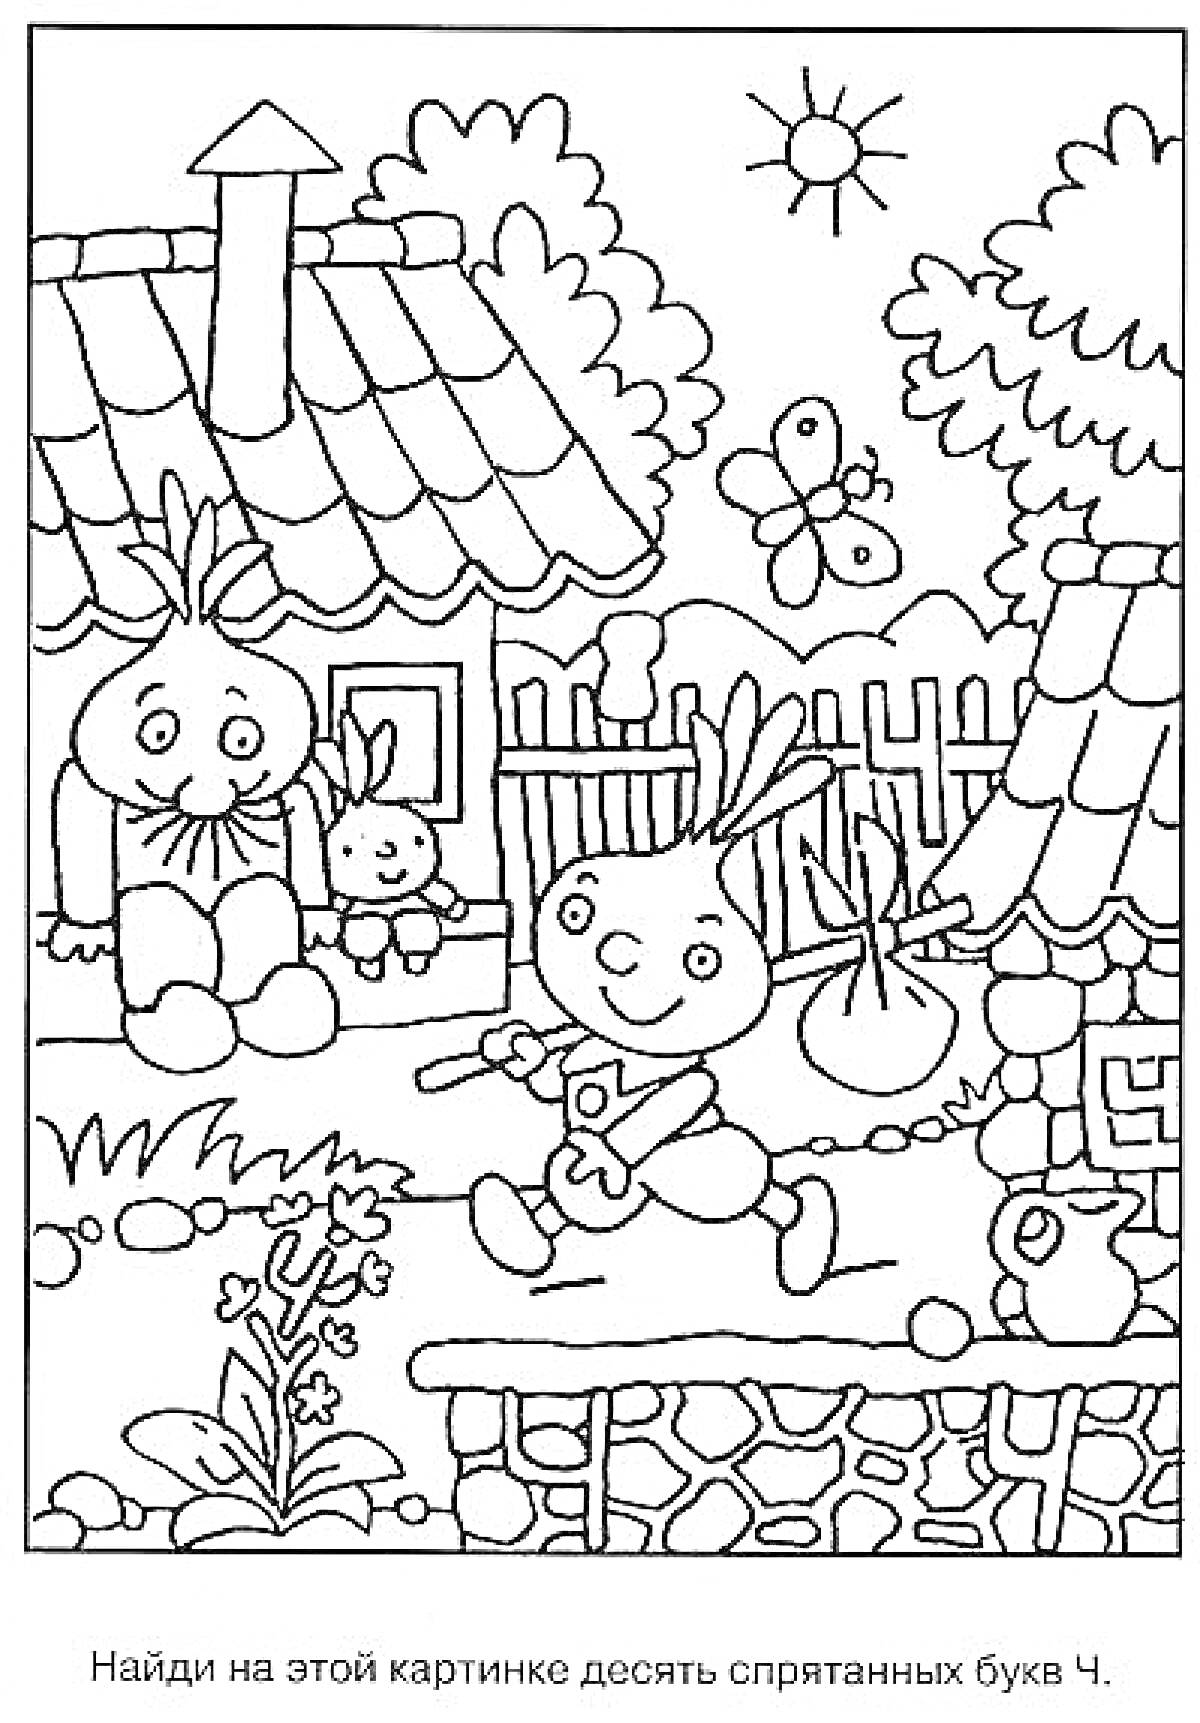 Раскраска Картинка с домом, забором, деревом, зайцами и бабочкой для поиска буквы Ч